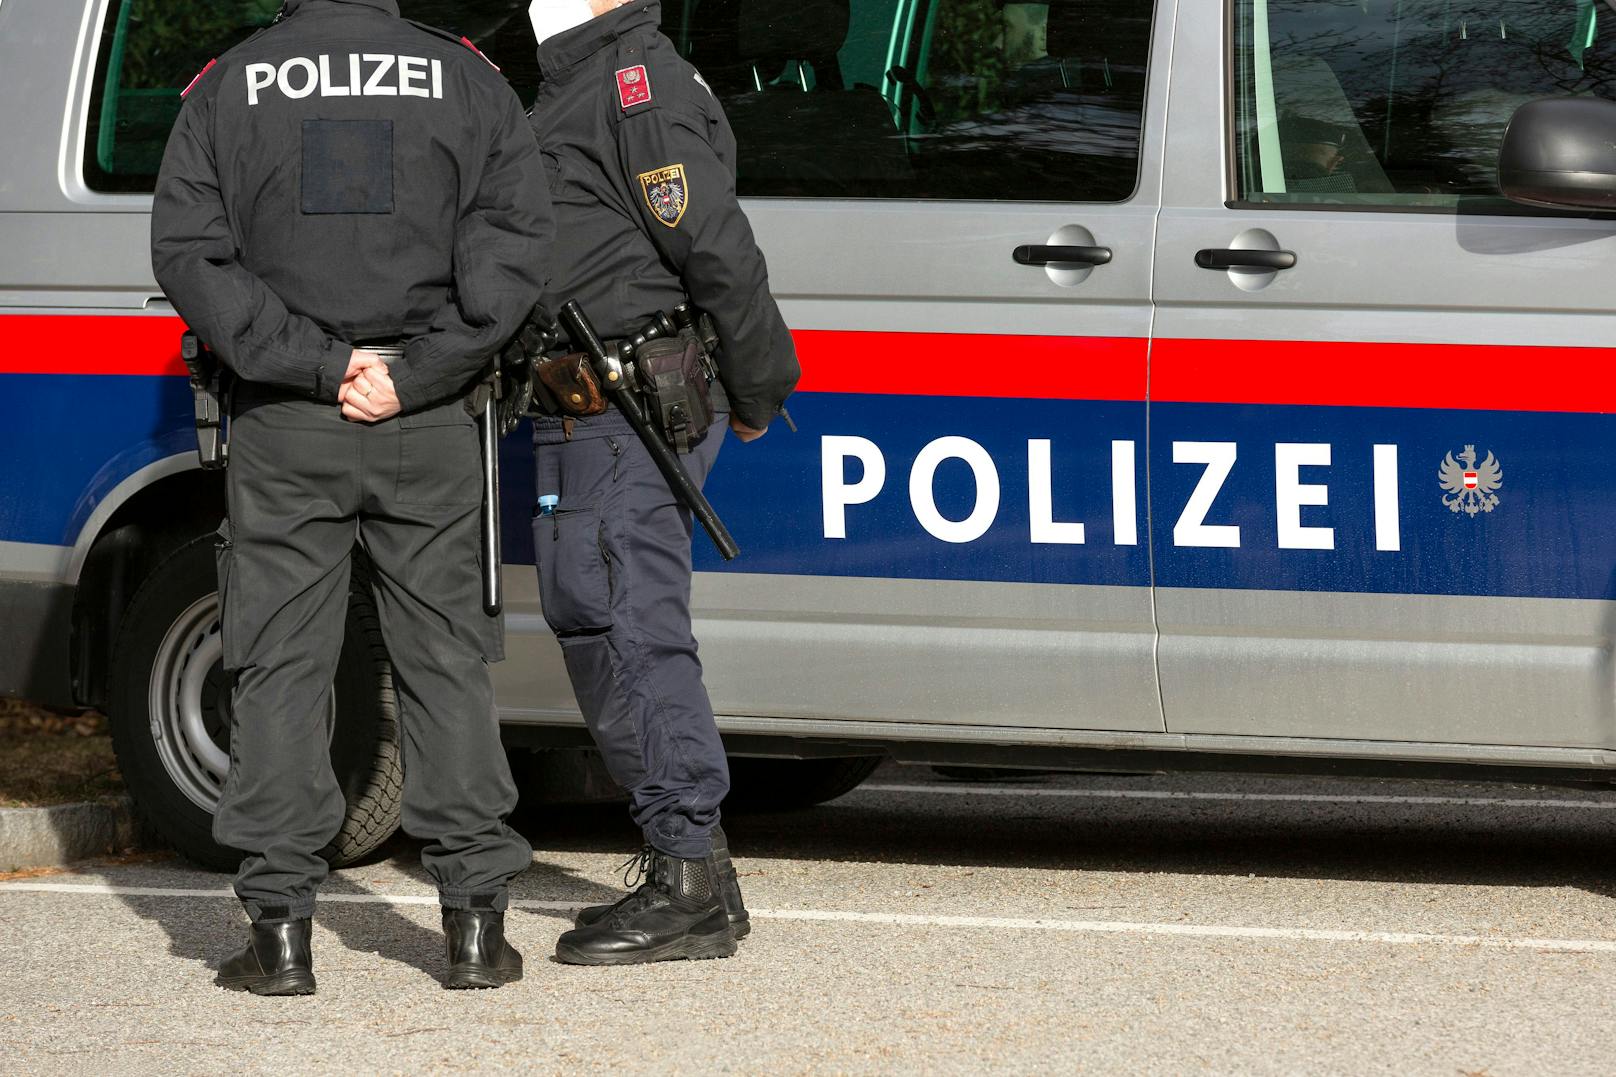 Polizisten heißen in Kärnten künftig Polizeikräfte